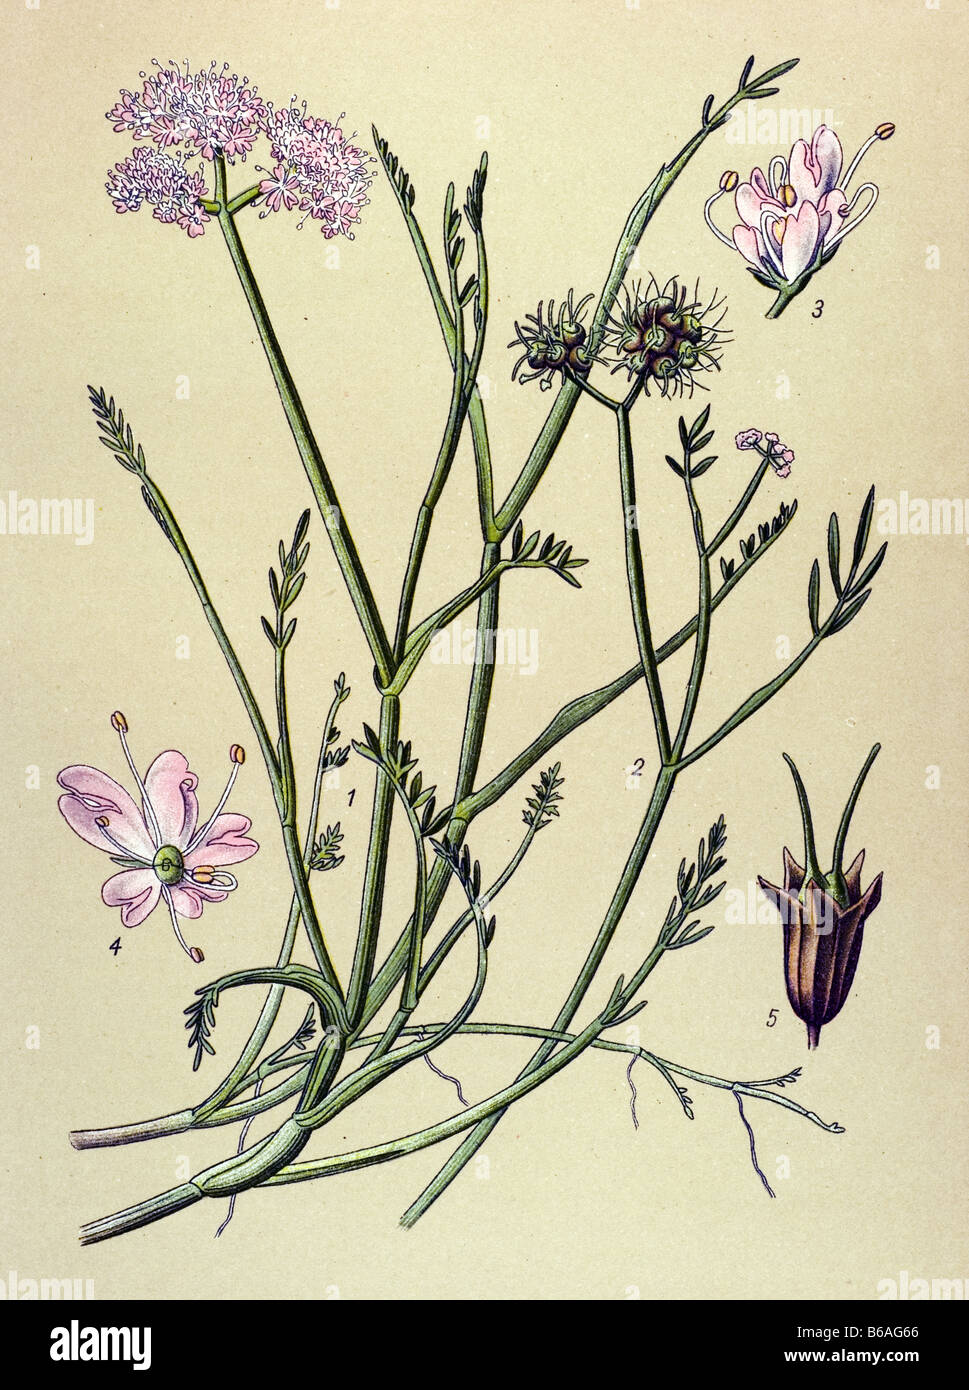 Oenanthe fistulosa poisonous plants illustrations Stock Photo